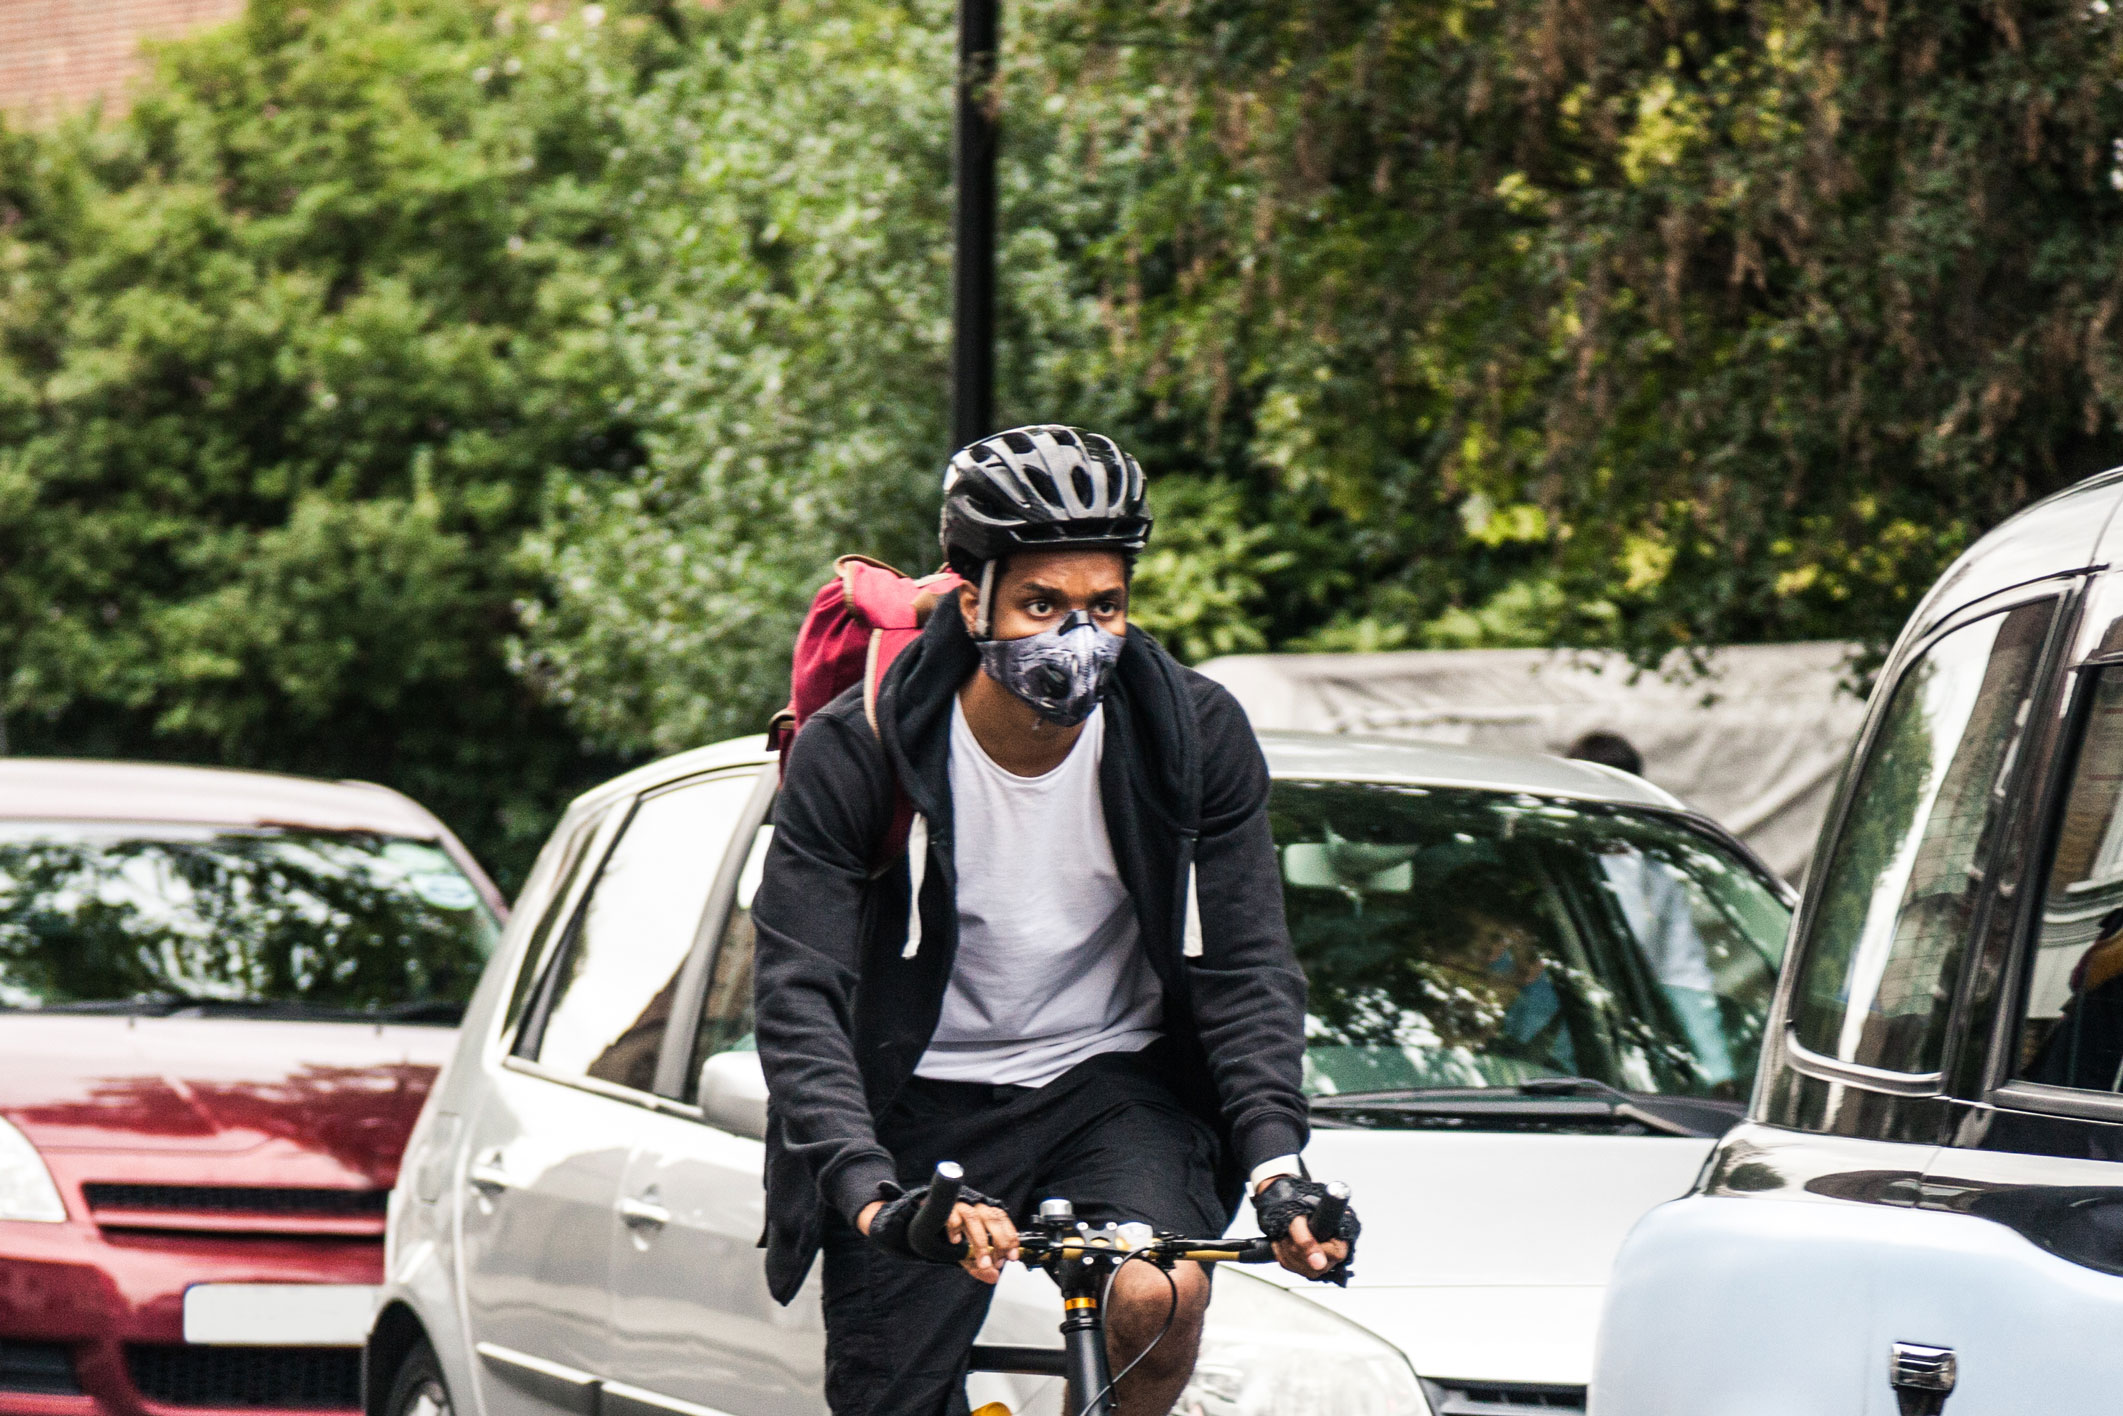 Masques dits « antipollution » : des données insuffisantes pour attester  d'un bénéfice sanitaire et recommander leur utilisation